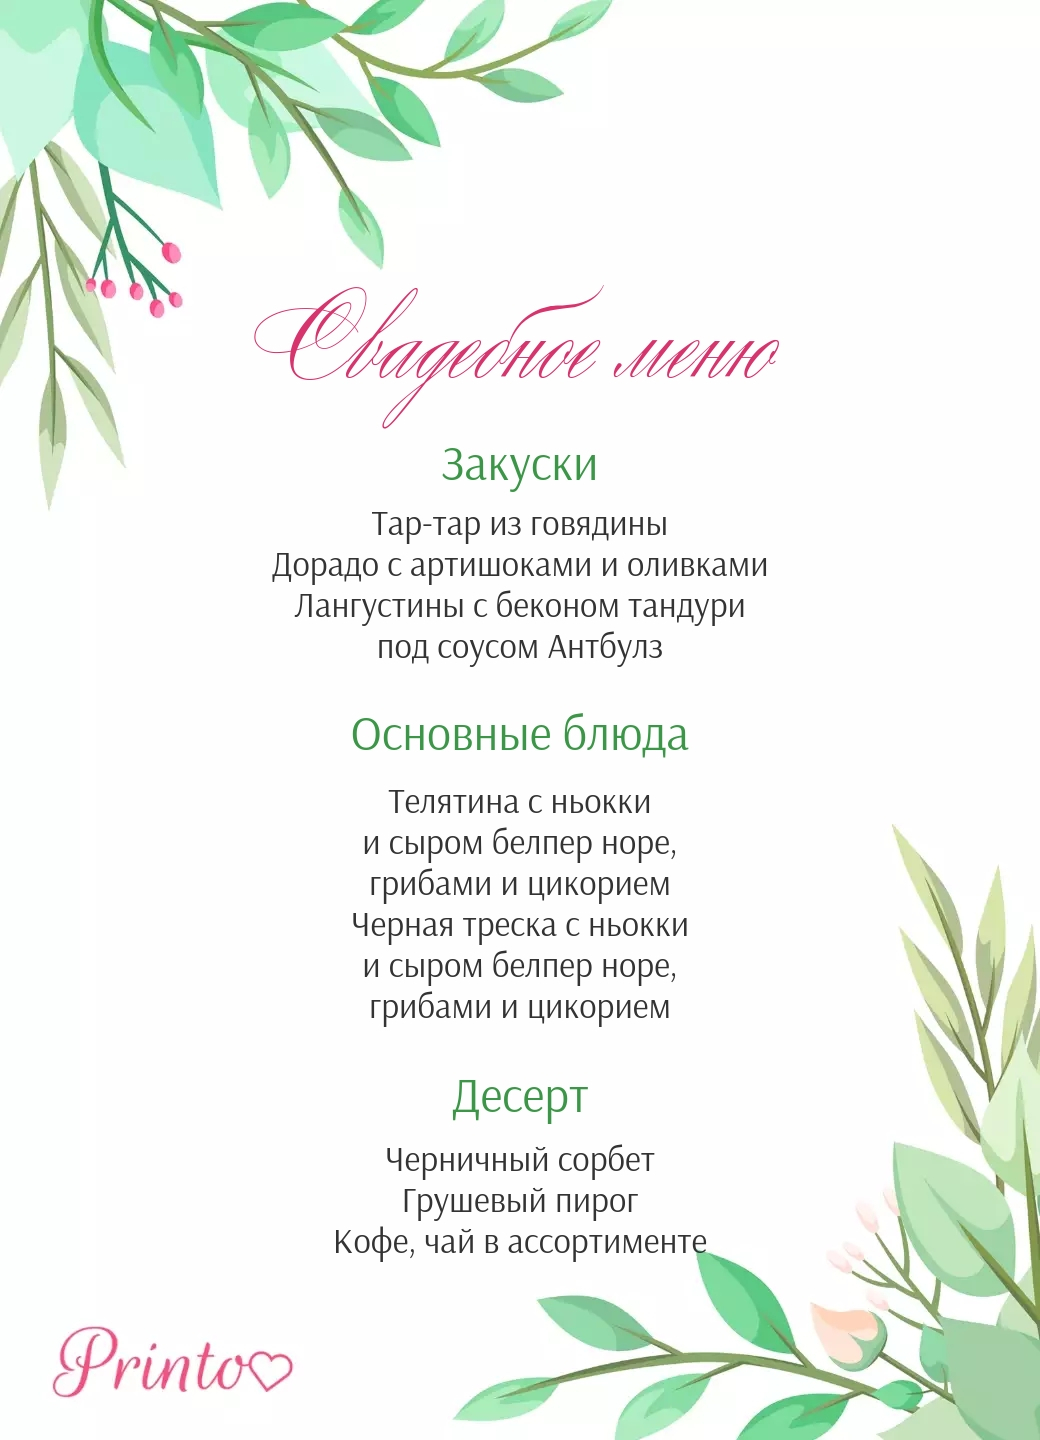 Шаблон свадебного меню "Летнее настроение"